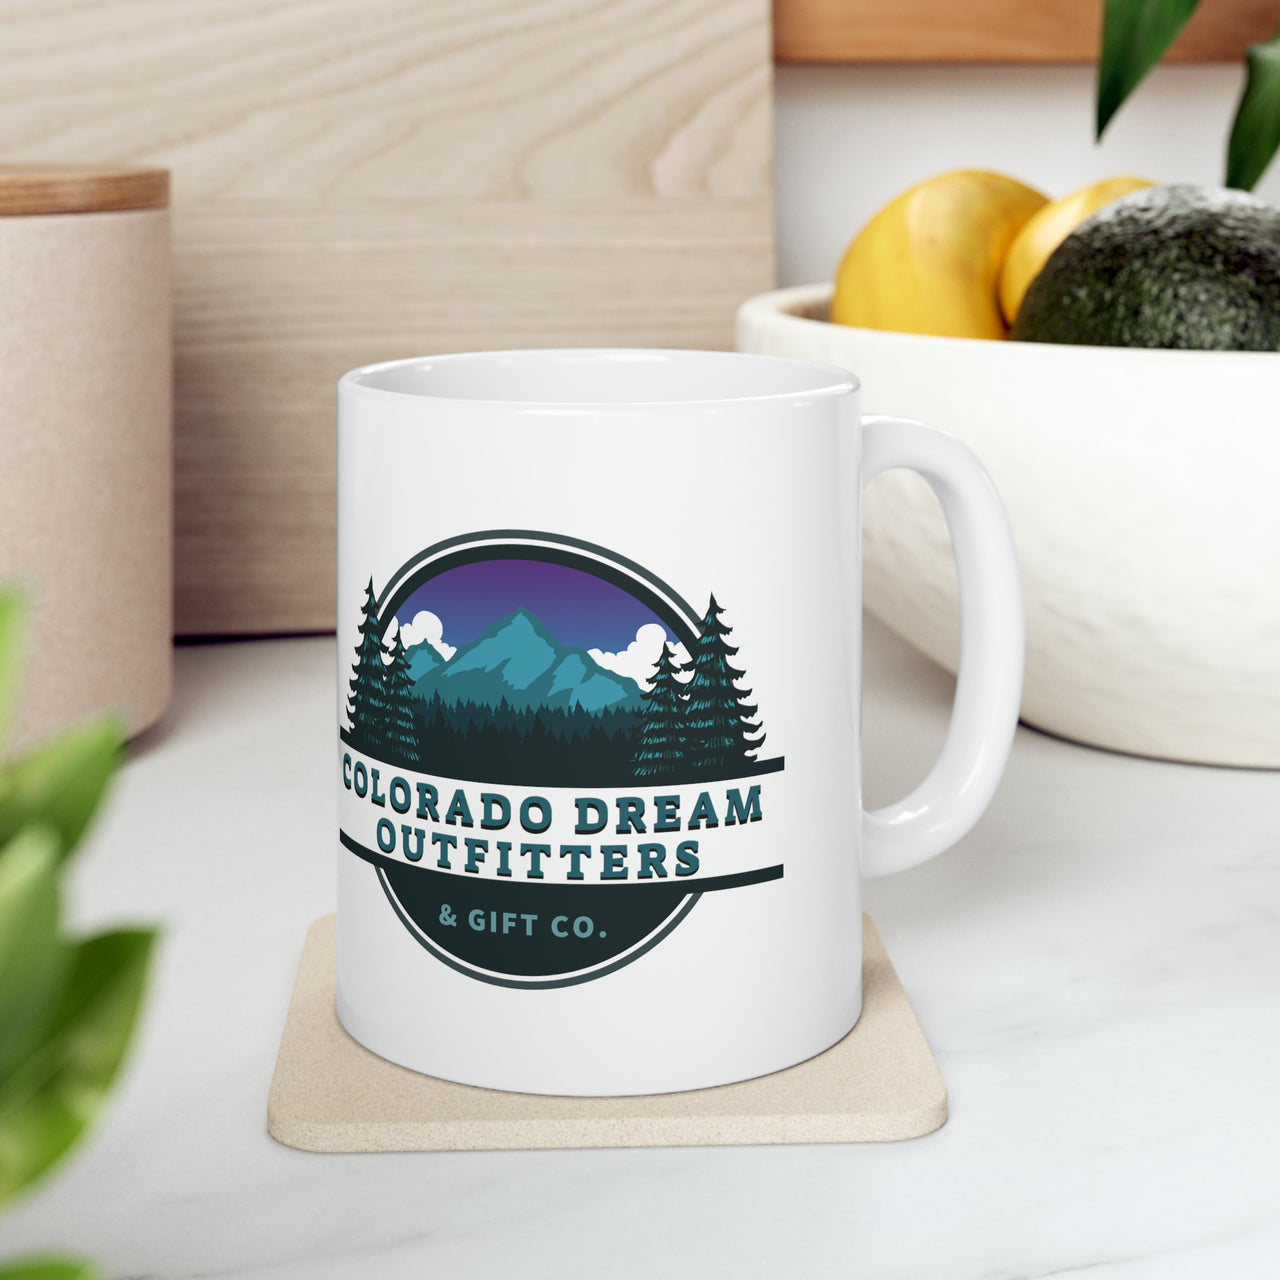 Colorado Dream Outfitters Coffee Mug